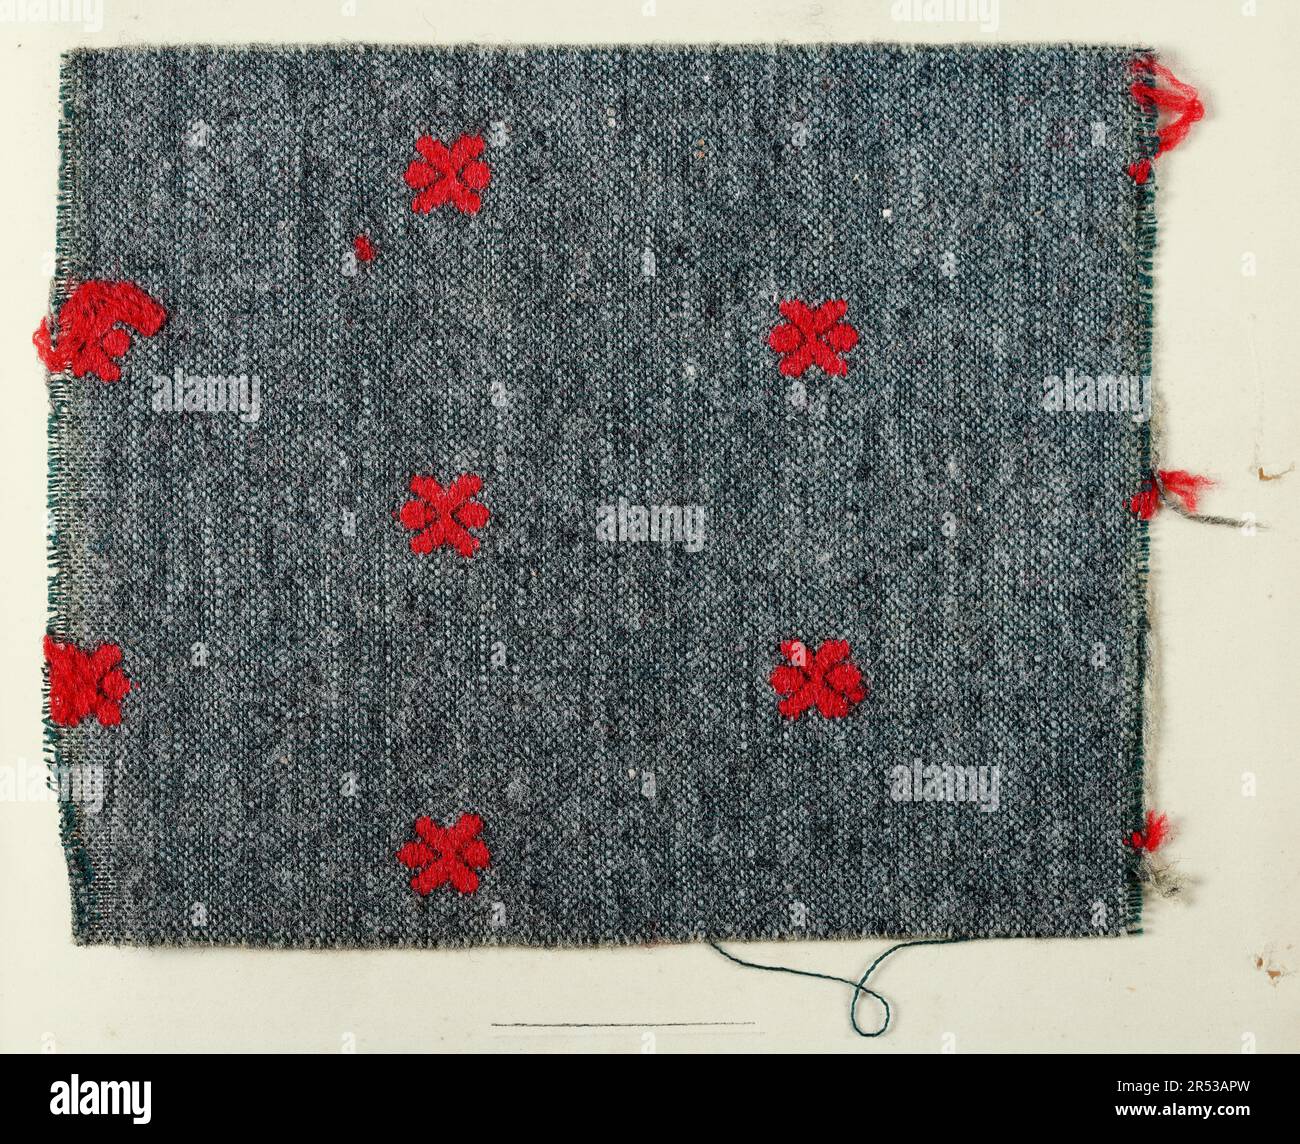 Motifs textiles originaux de l'époque victorienne pour la robe, branche brodée grise et rouge maufacée par Henry et fils pour Bradbury, Greatorex et Beall, 1840s Banque D'Images